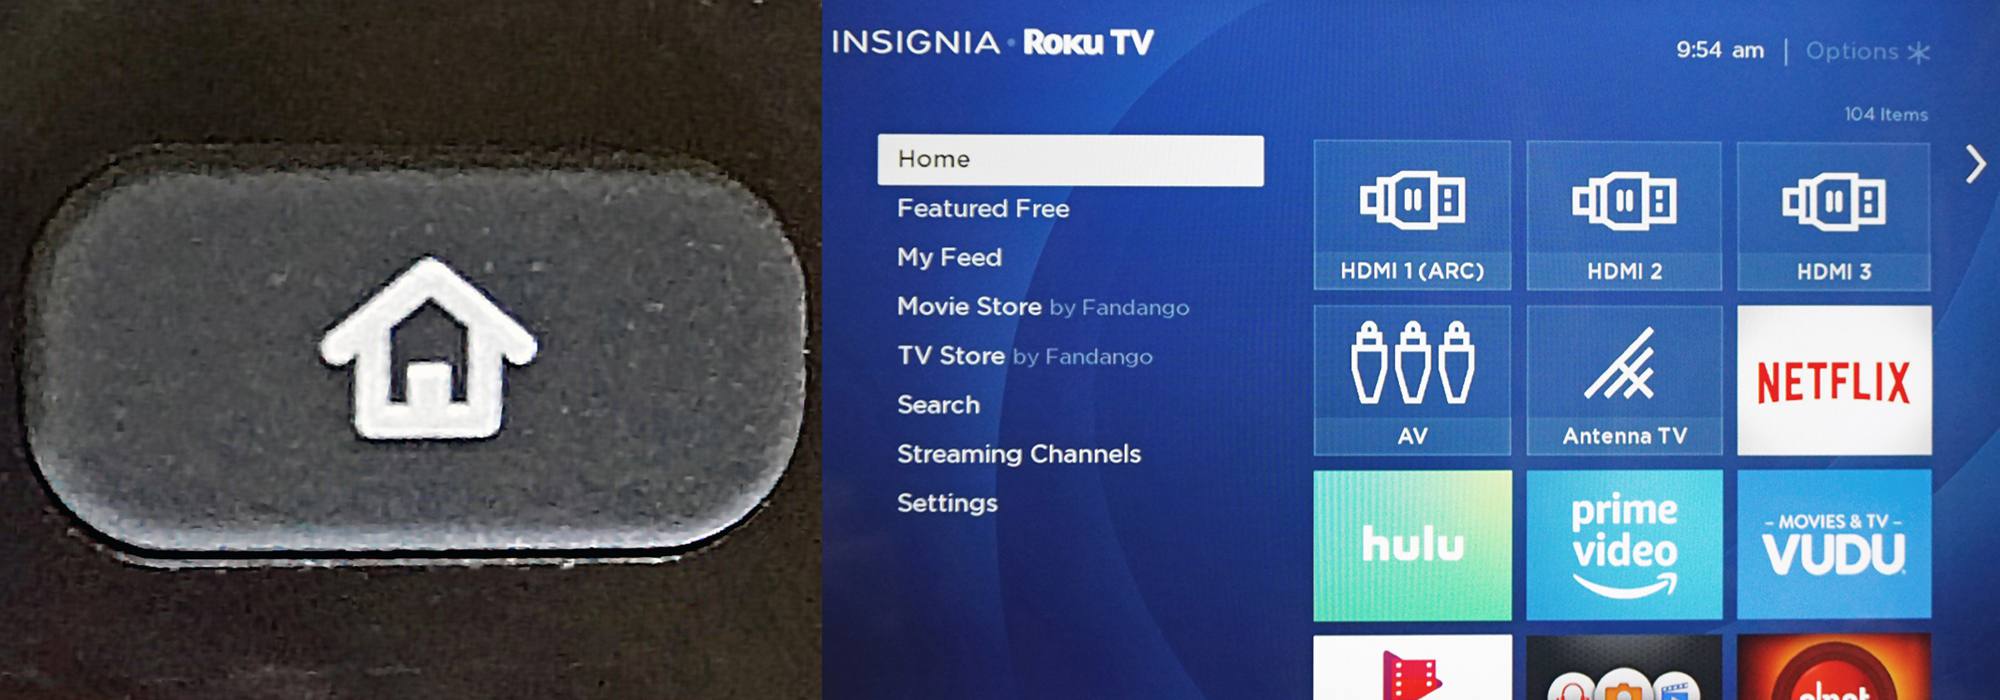 Controle remoto da TV Roku - botão inicial e tela